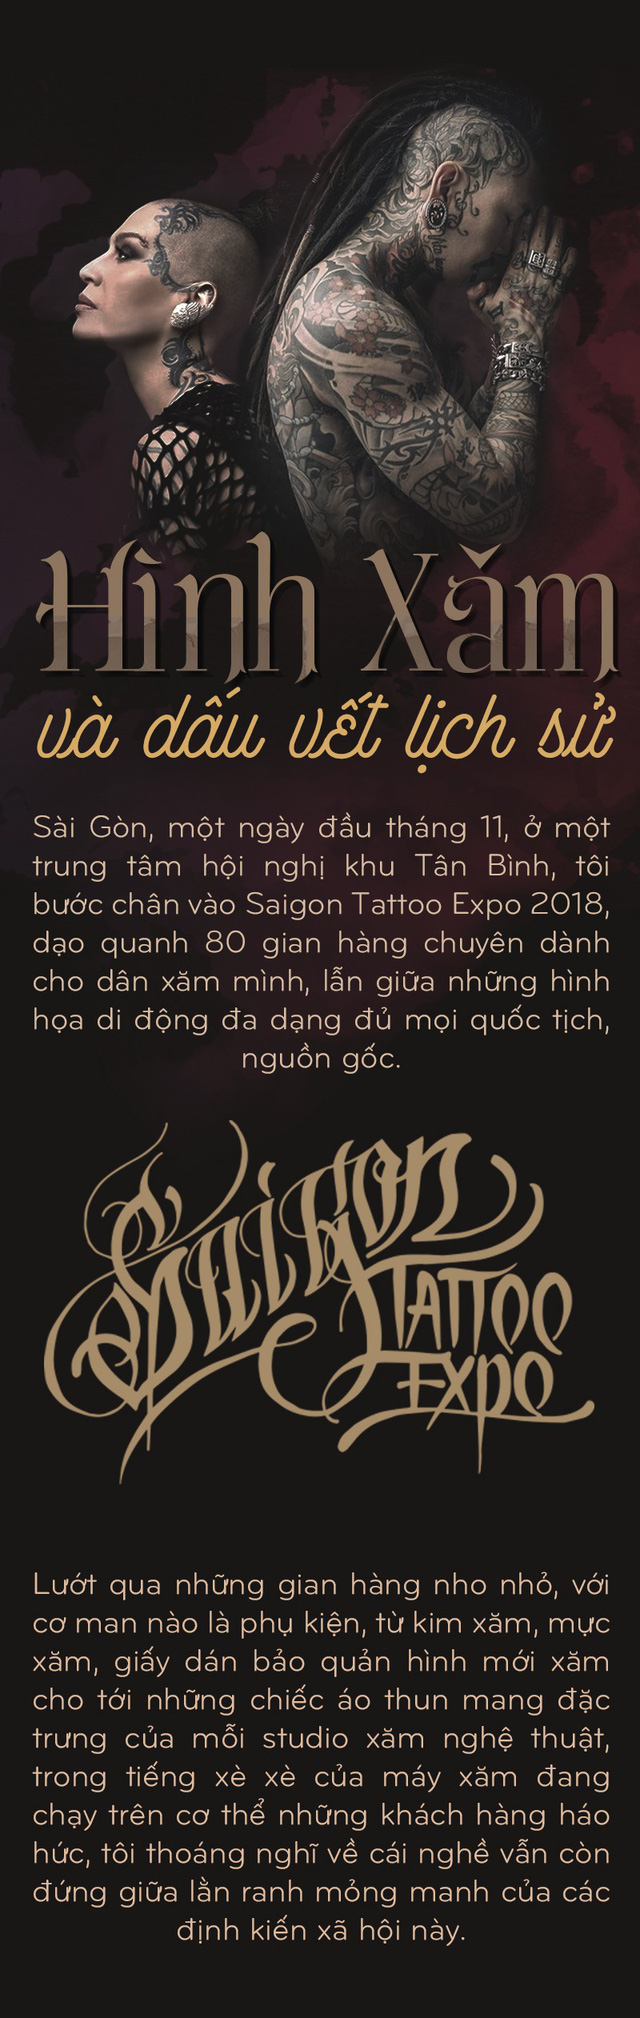 Cộng Đồng Tattoo